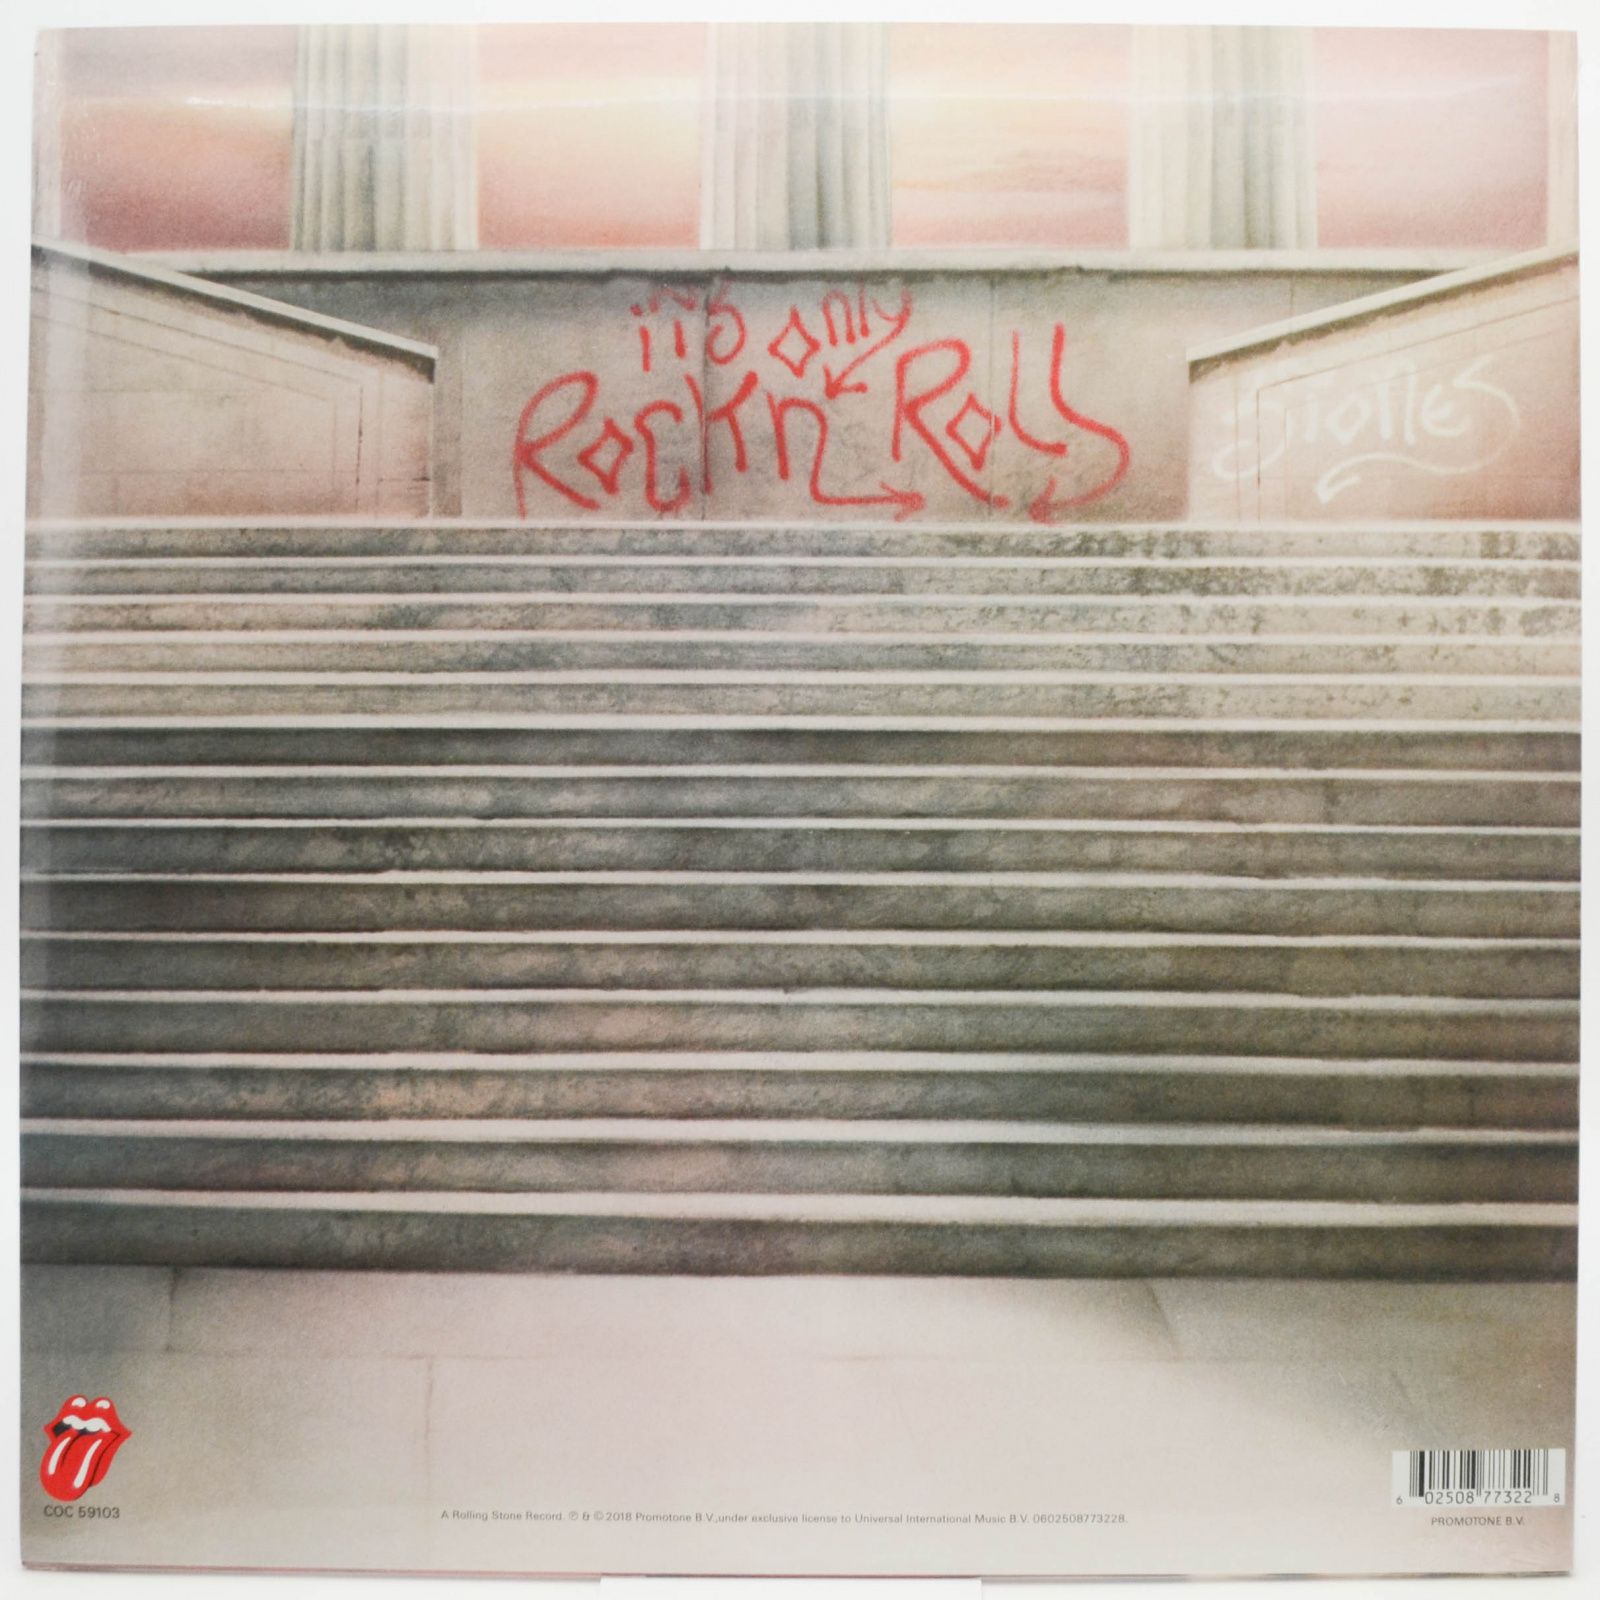 Rolling Stones — It's Only Rock 'N Roll, 1974